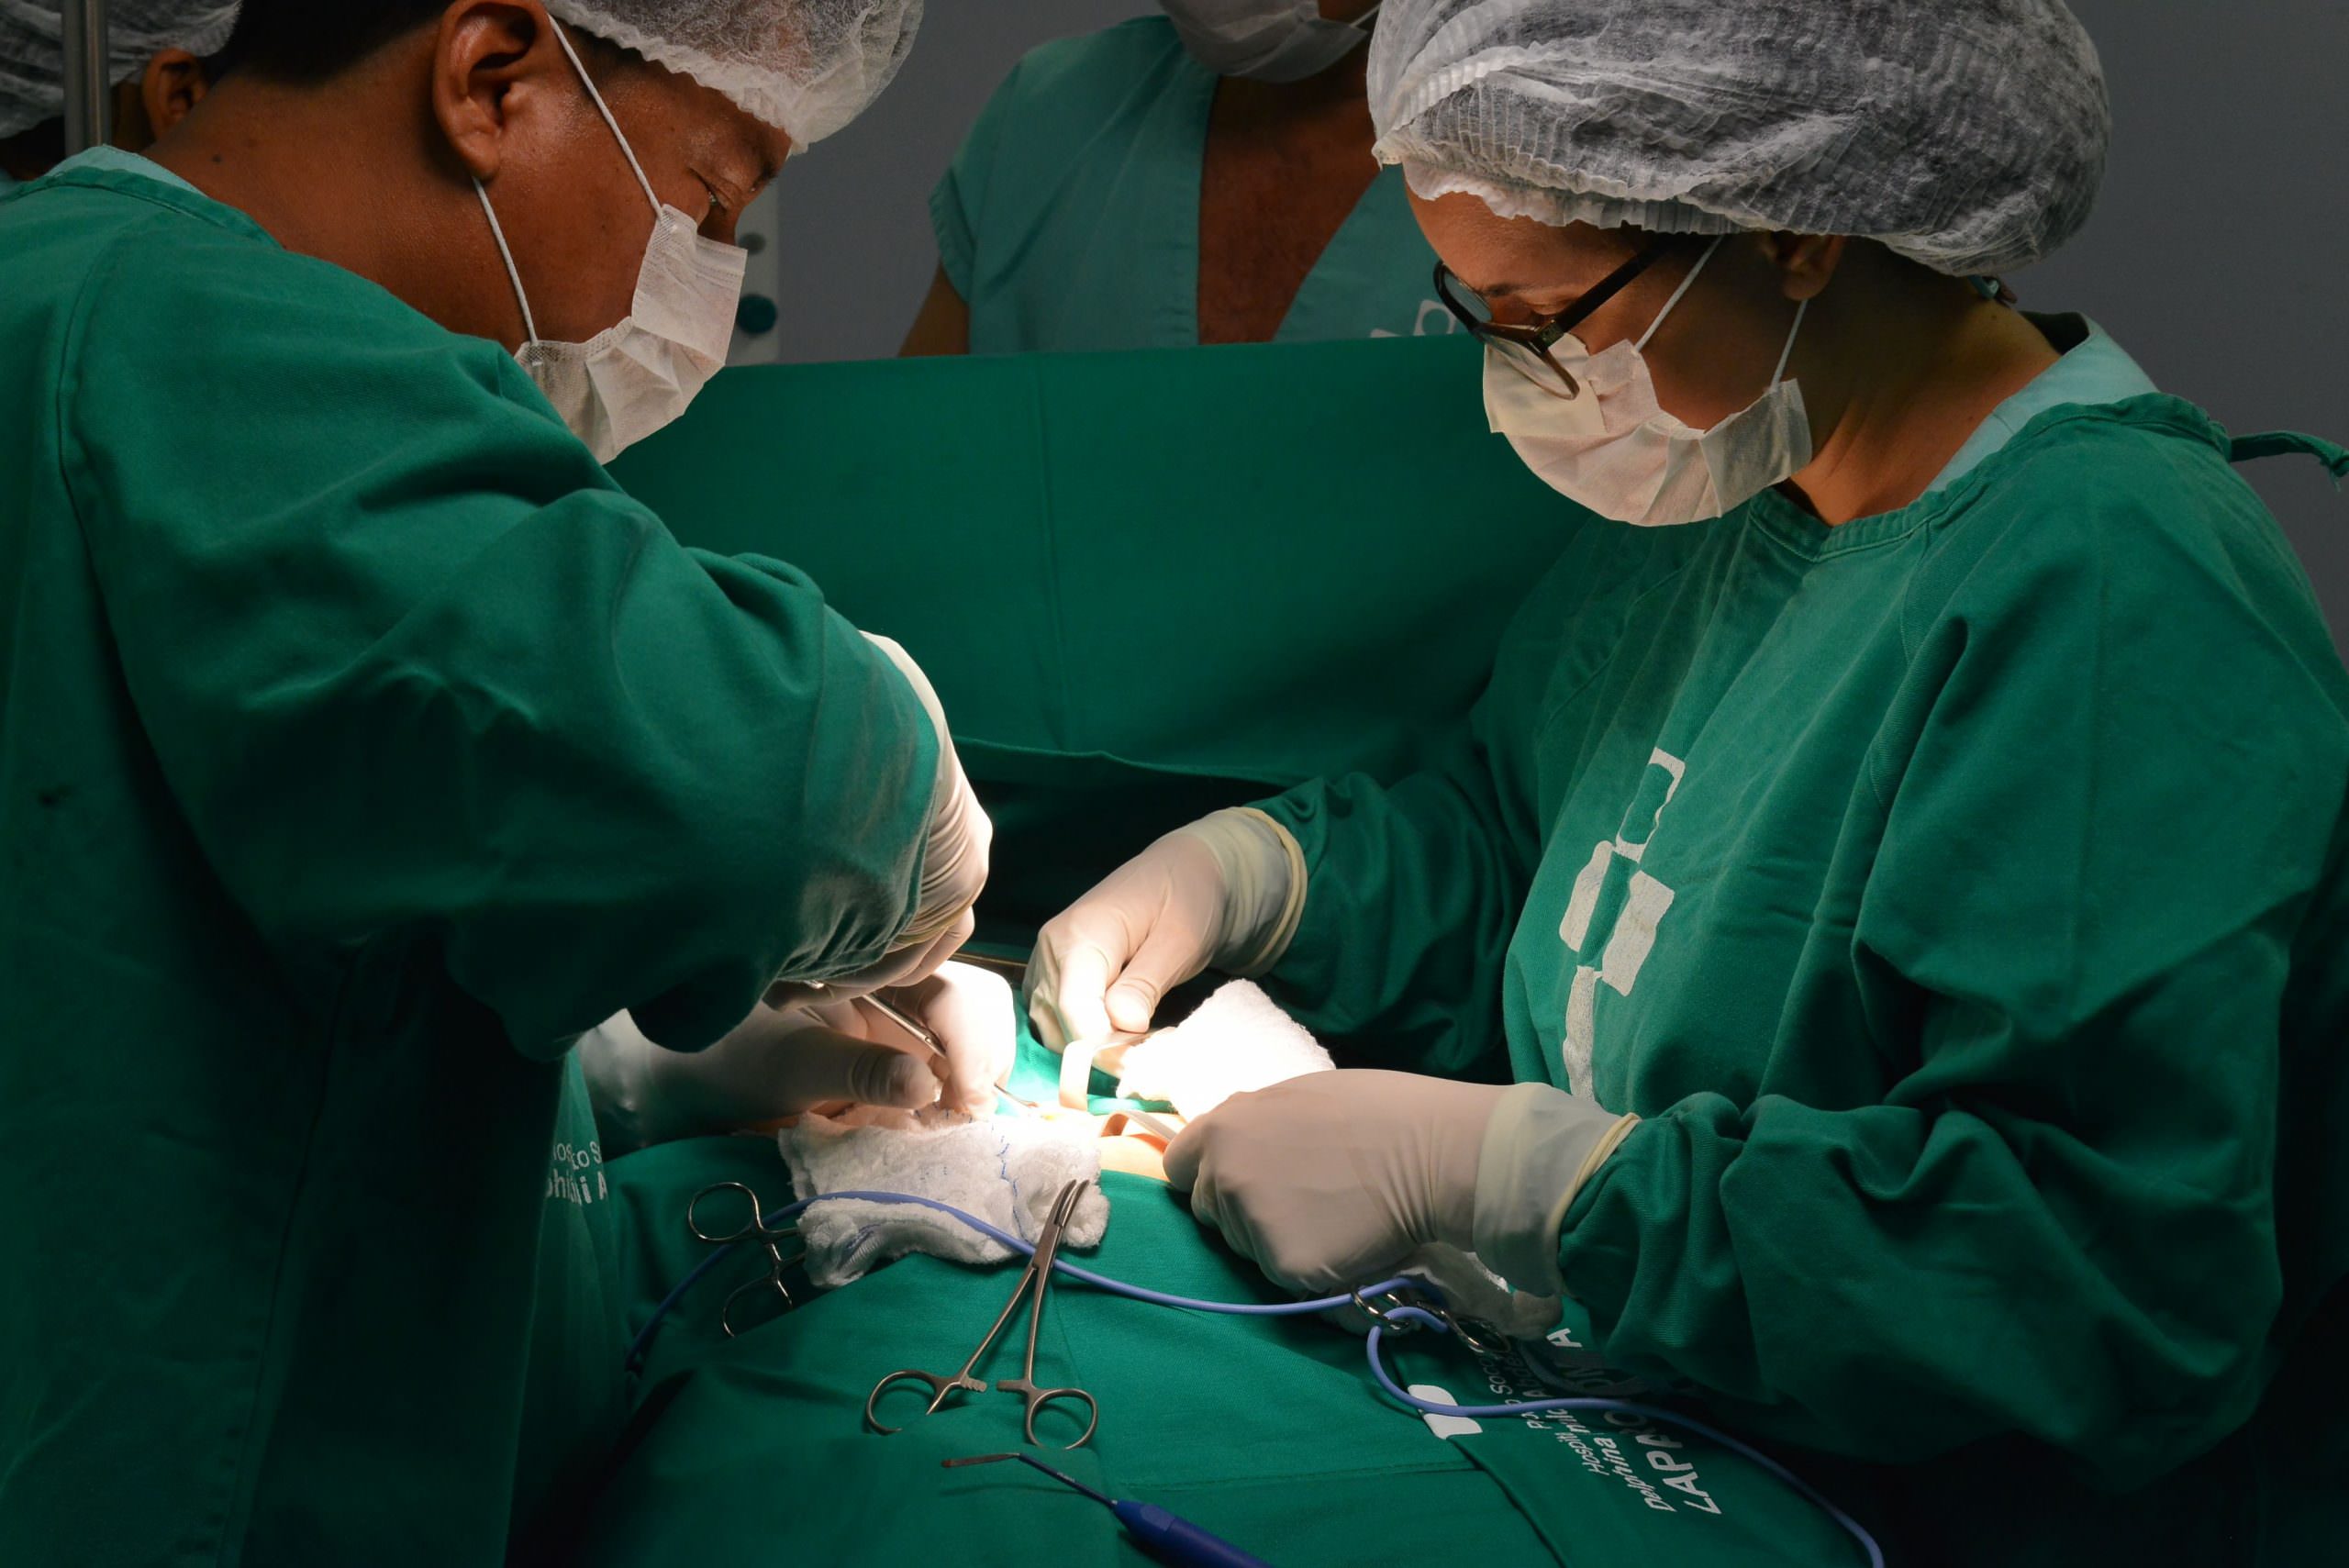 Em duas semanas de funcionamento, mais de 100 cirurgias são realizadas no Hospital da Zona Norte